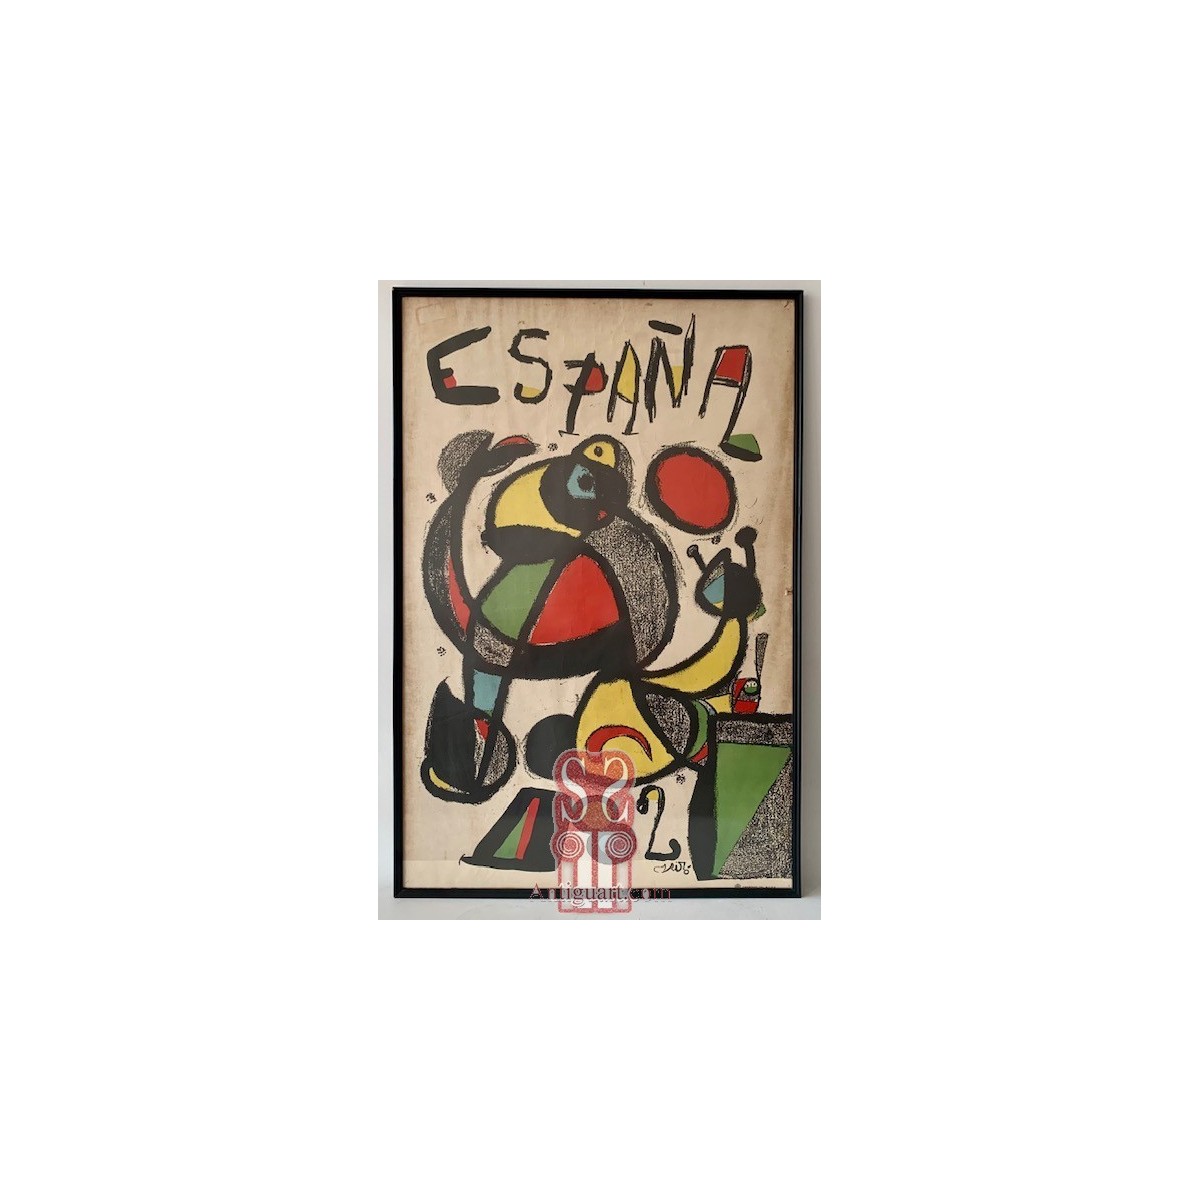  Joan Miro, Cartel original de España 82